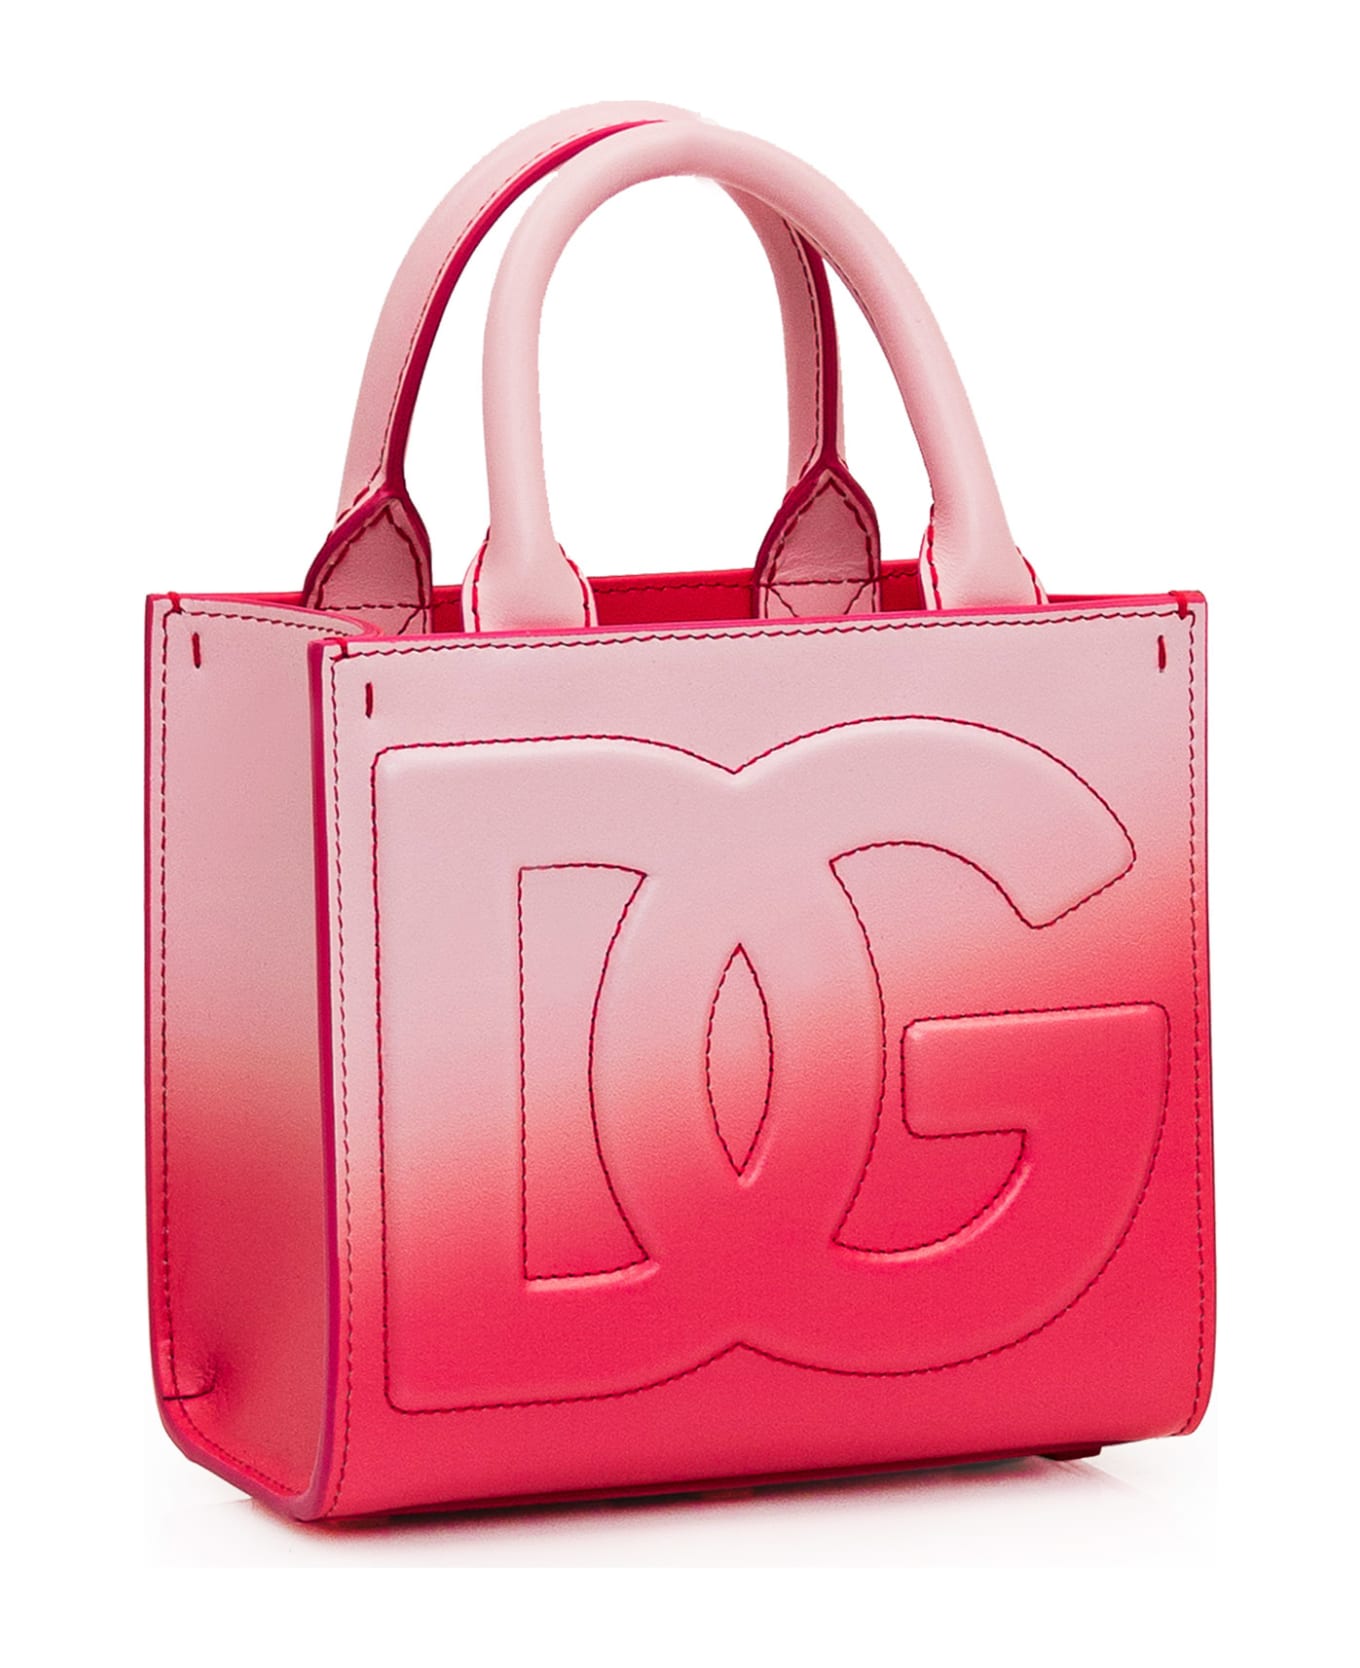 Dolce & Gabbana Shopping Bag - DG DEGRADE ROSA